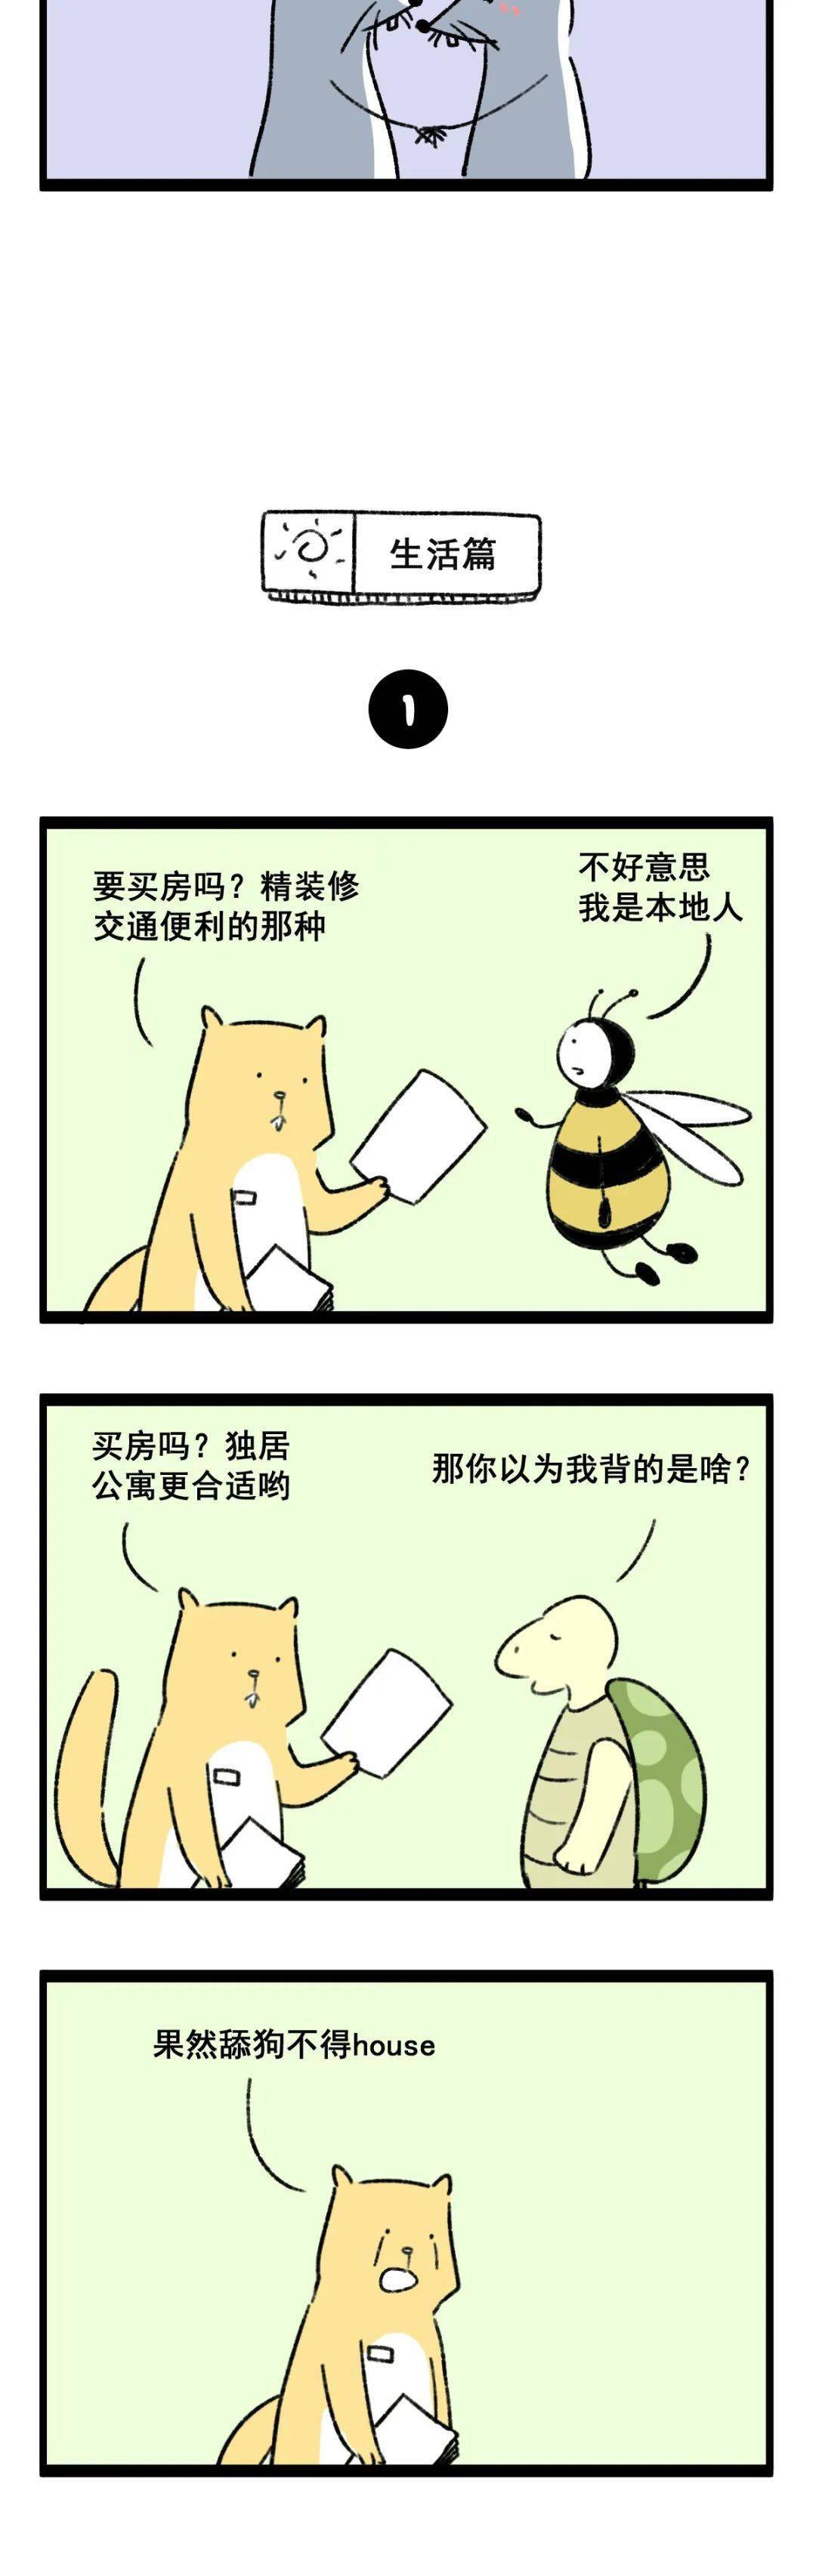 搞笑漫画——当动物学会说冷笑话!